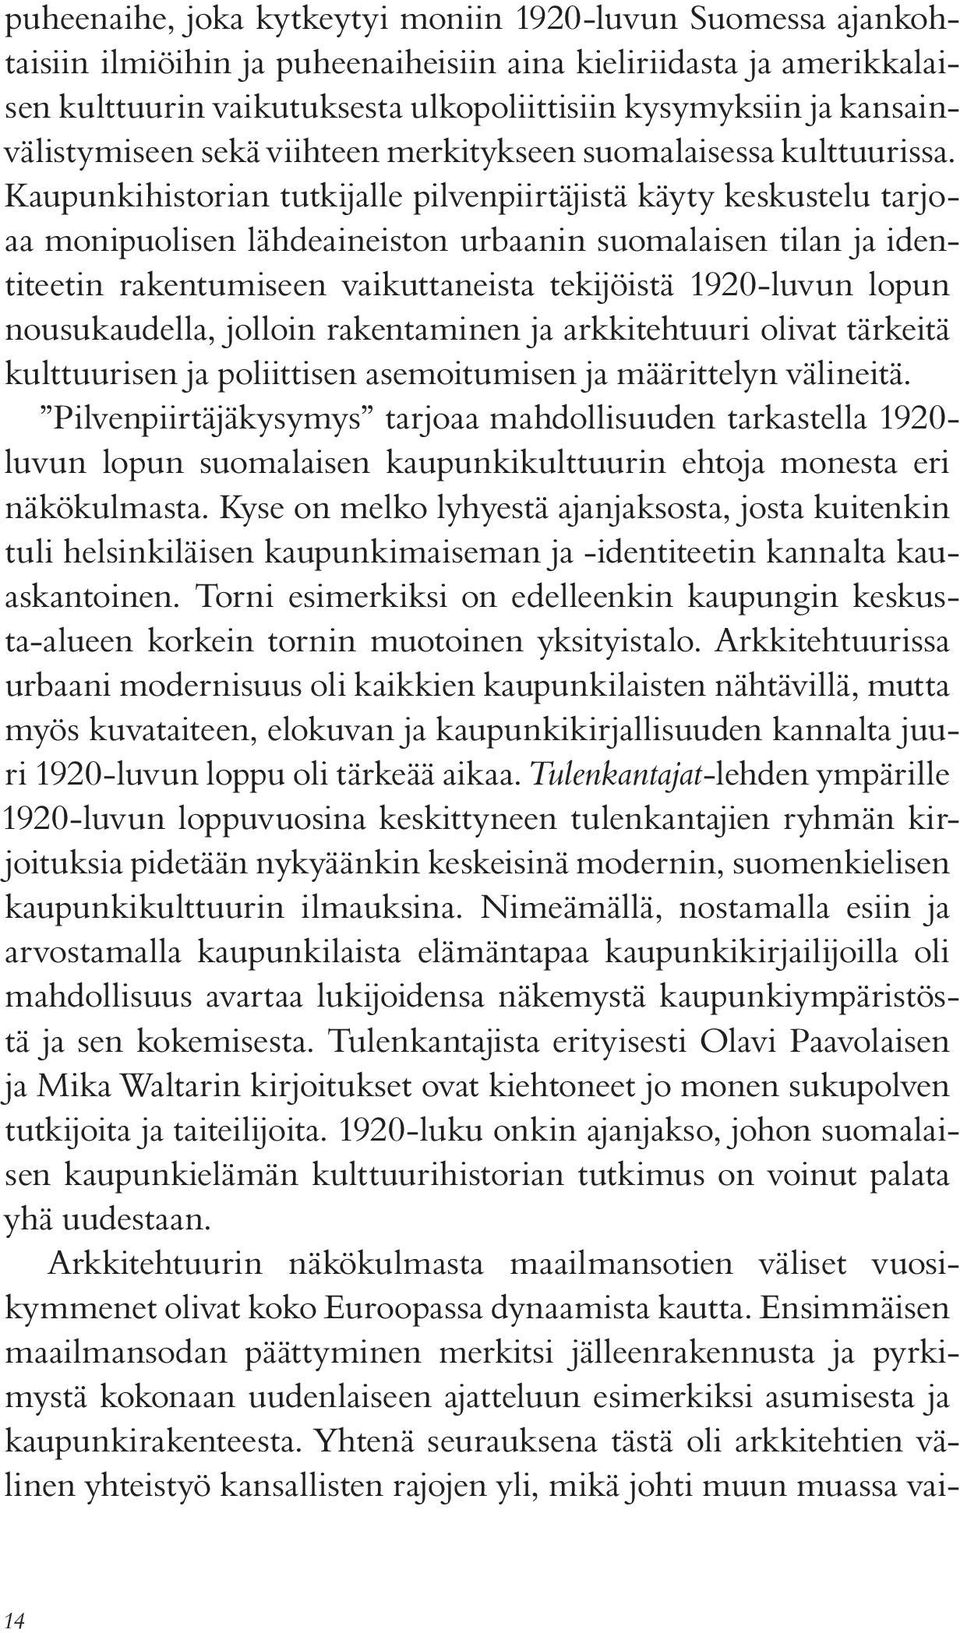 Kaupunkihistorian tutkijalle pilvenpiirtäjistä käyty keskustelu tarjoaa monipuolisen lähdeaineiston urbaanin suomalaisen tilan ja identiteetin rakentumiseen vaikuttaneista tekijöistä 1920-luvun lopun